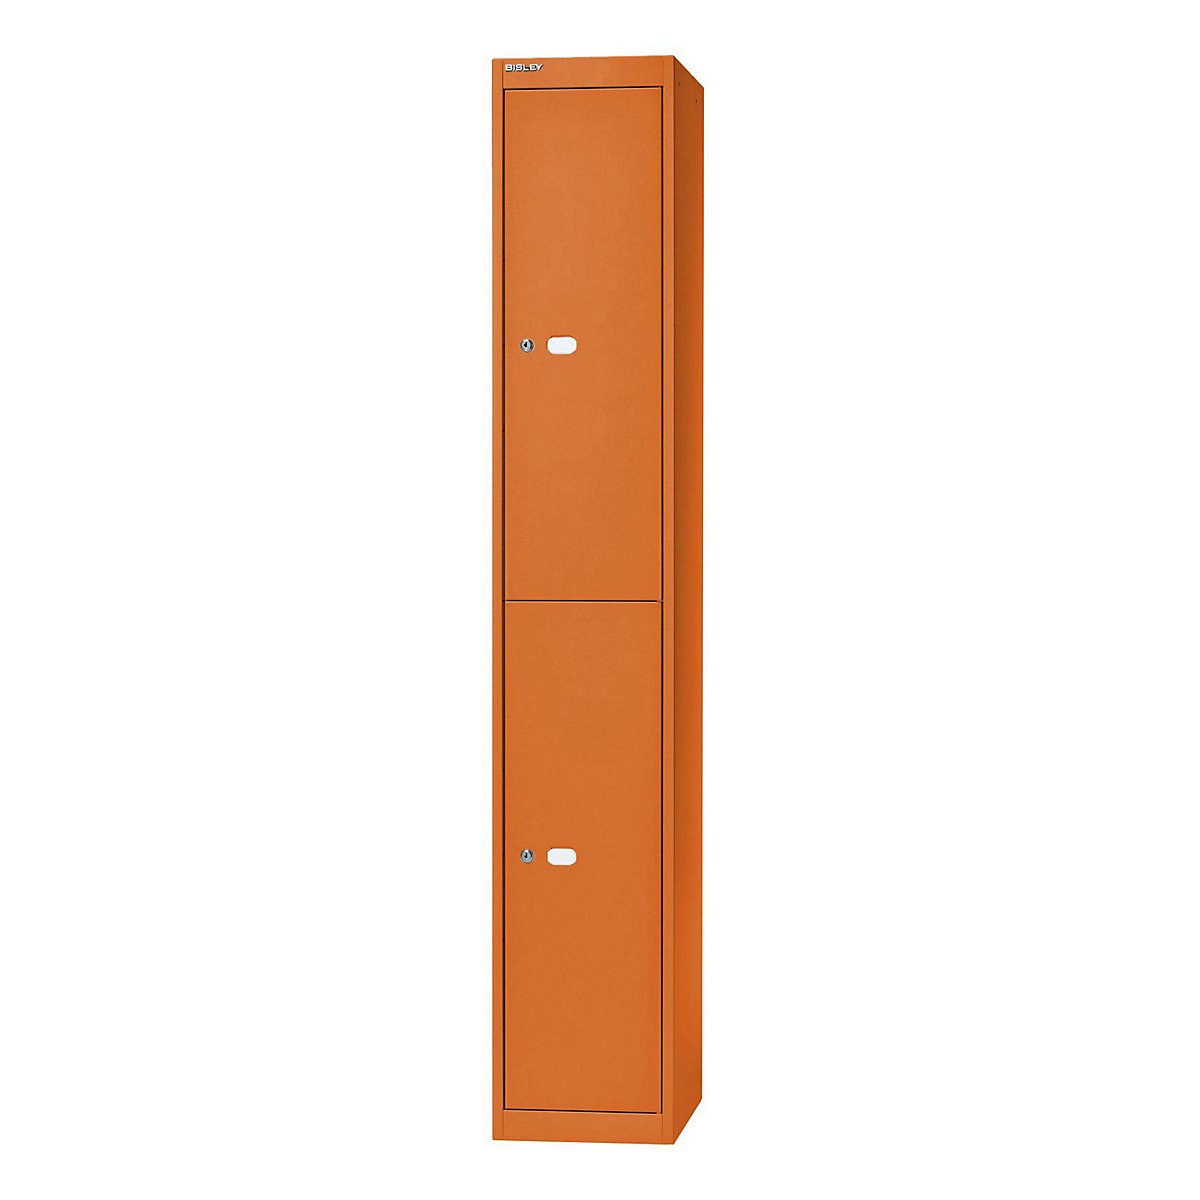 BISLEY OFFICE Garderobensystem, Tiefe 305 mm, 2 Fächer mit je 1 Kleiderhaken, orange